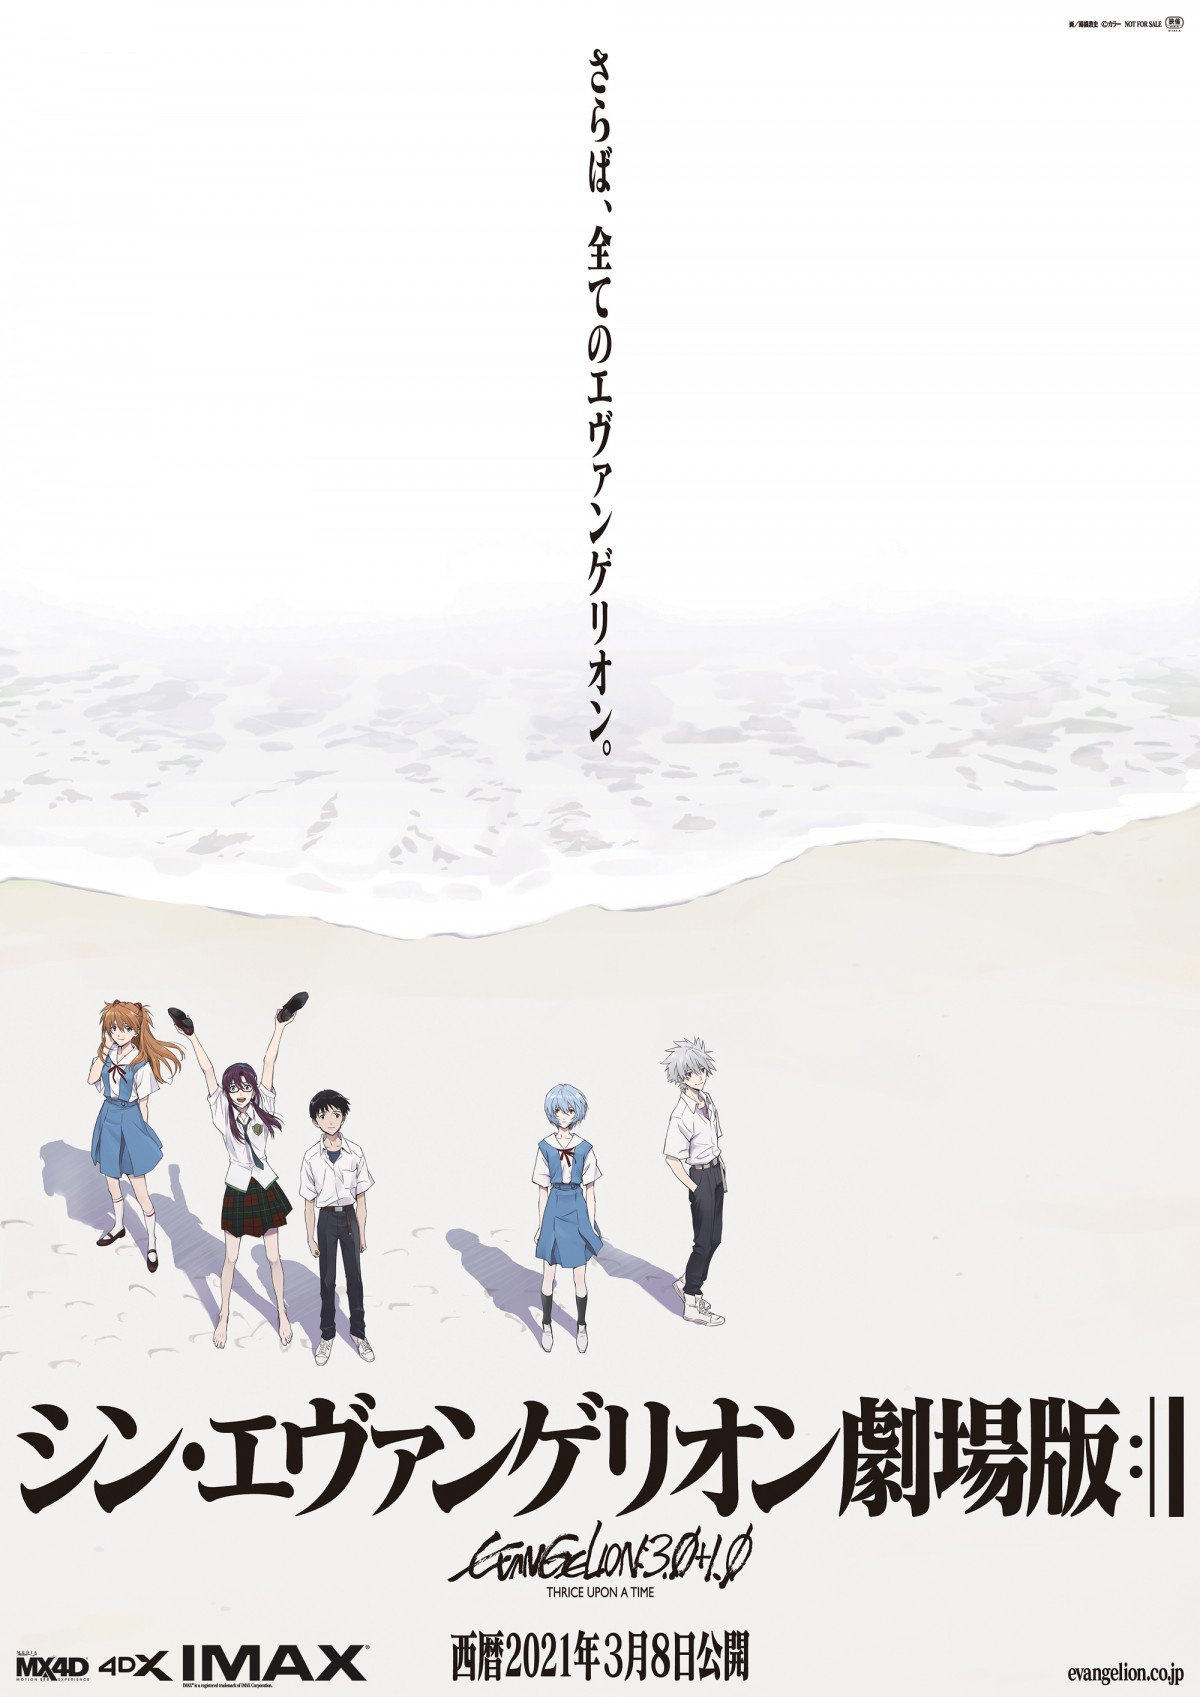 シン エヴァンゲリオン劇場版 3 8公開決定 緊急事態宣言での再延期経て Oricon News